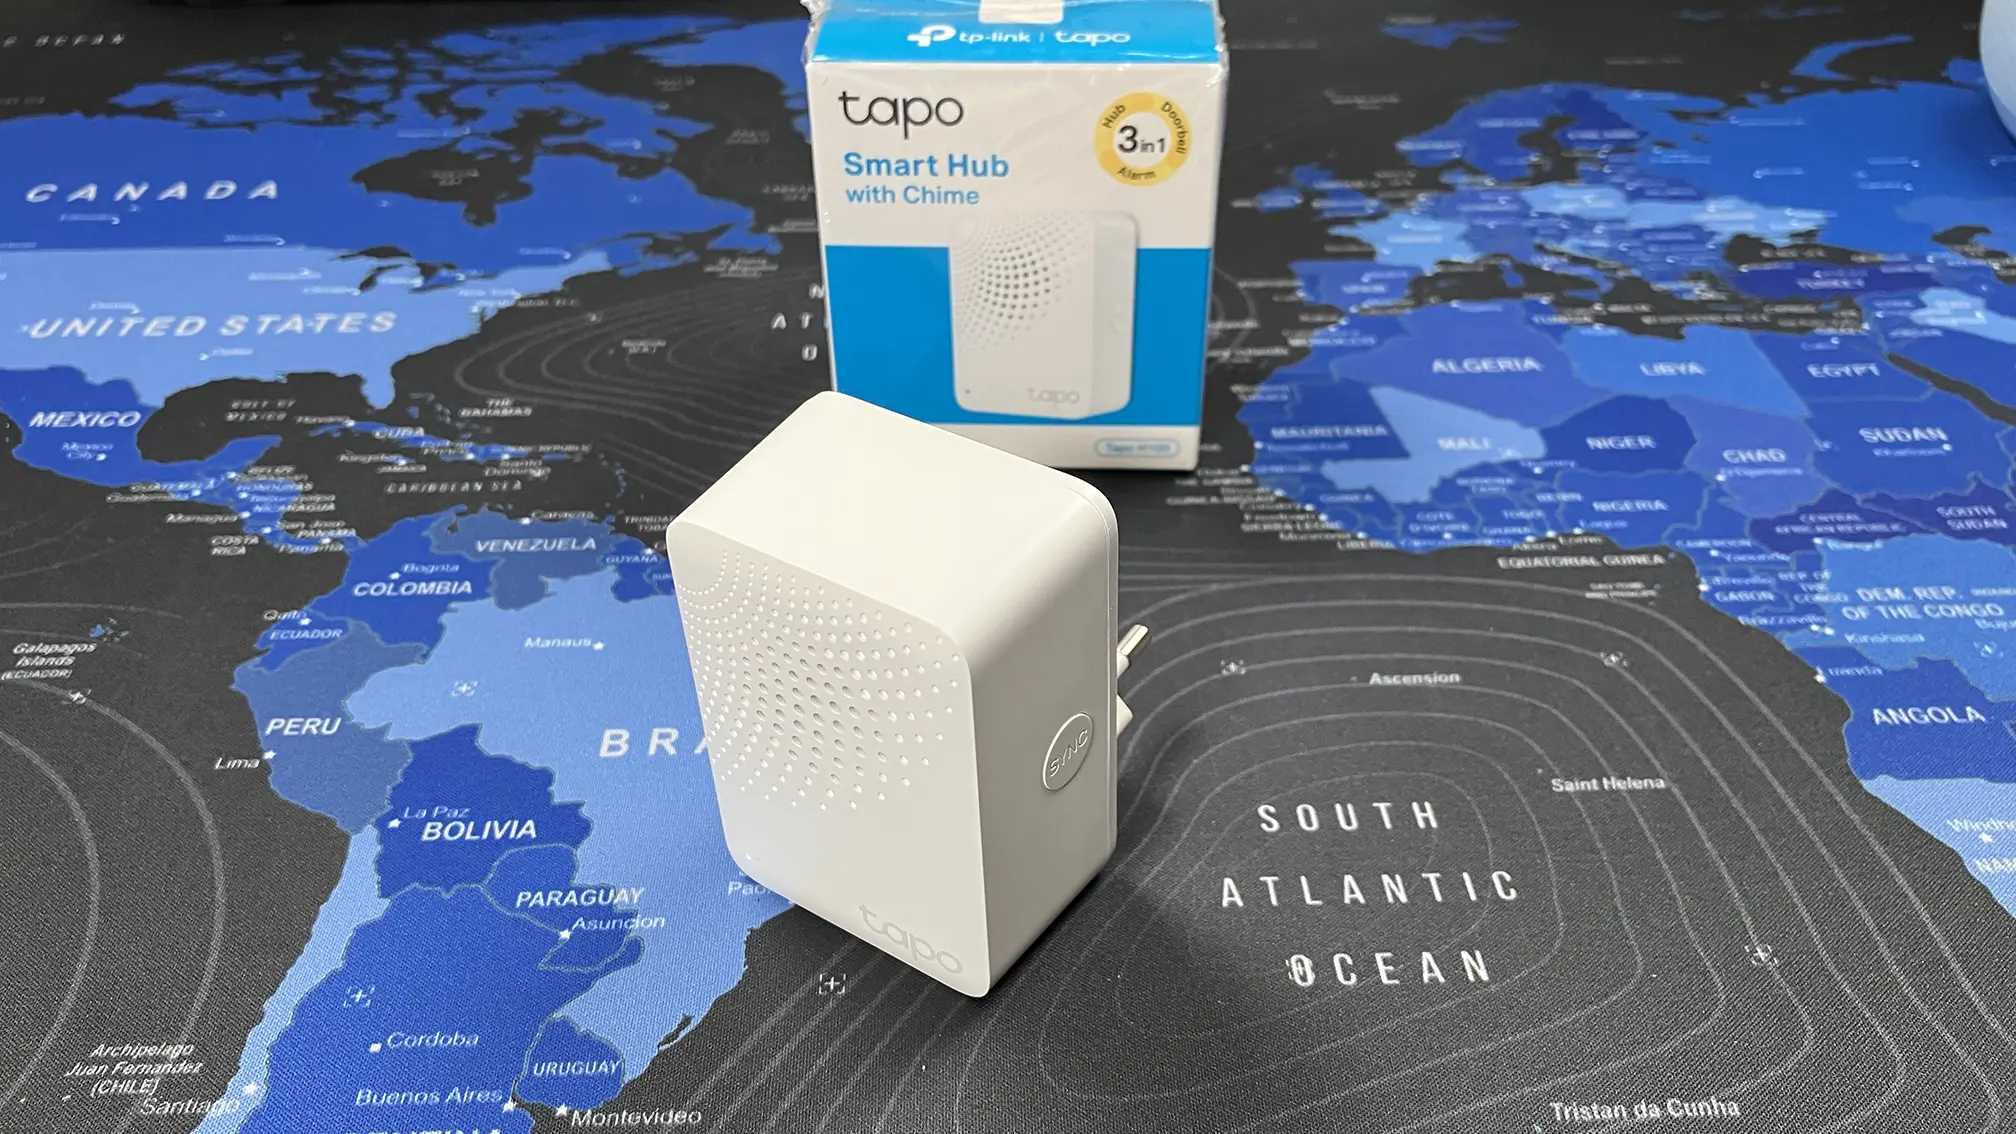 TP-Link Tapo H100 Smart Hub al detalle